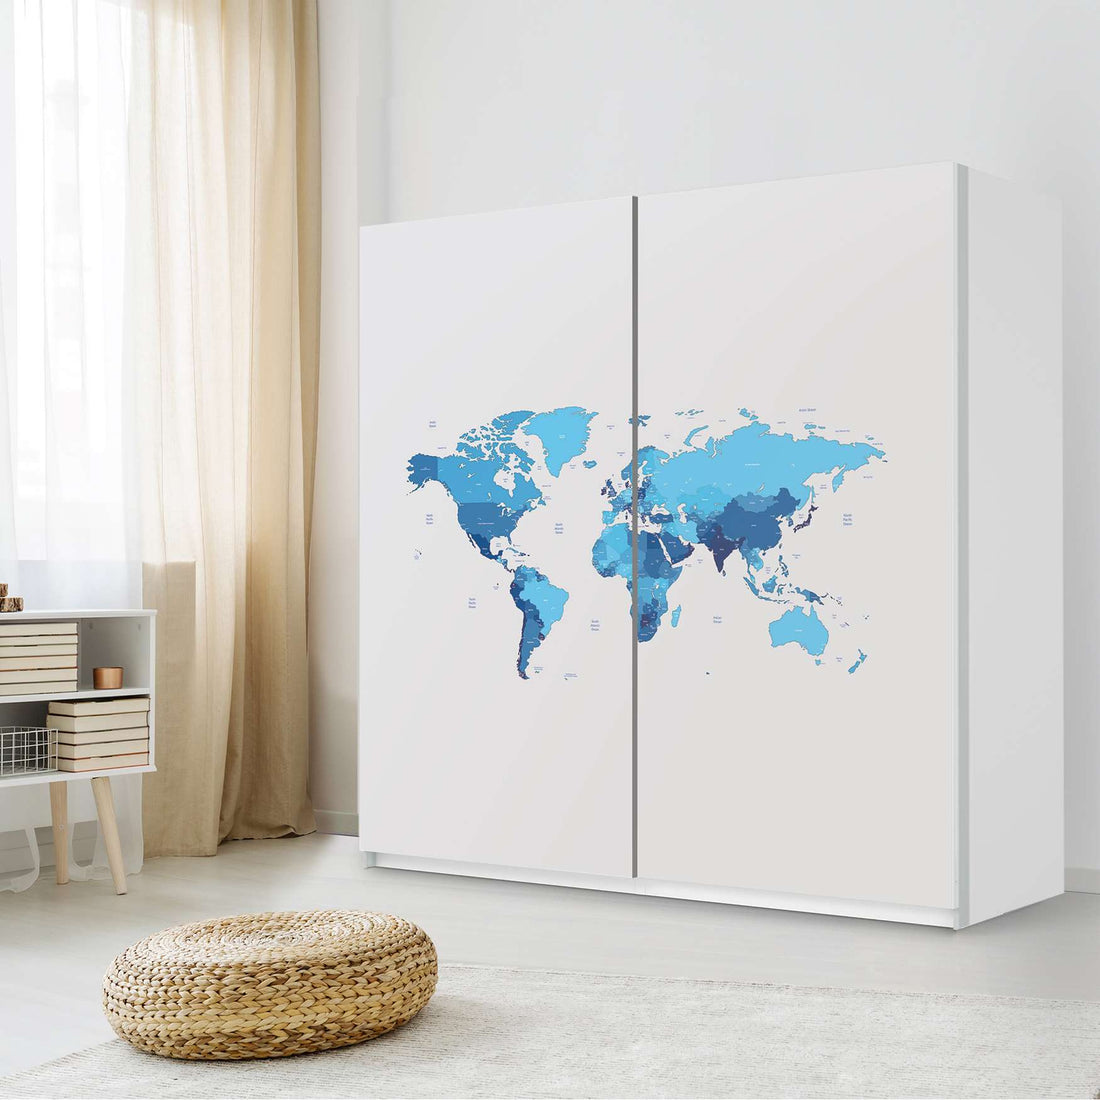 Möbel Klebefolie Politische Weltkarte - IKEA Pax Schrank 201 cm Höhe - Schiebetür - Schlafzimmer